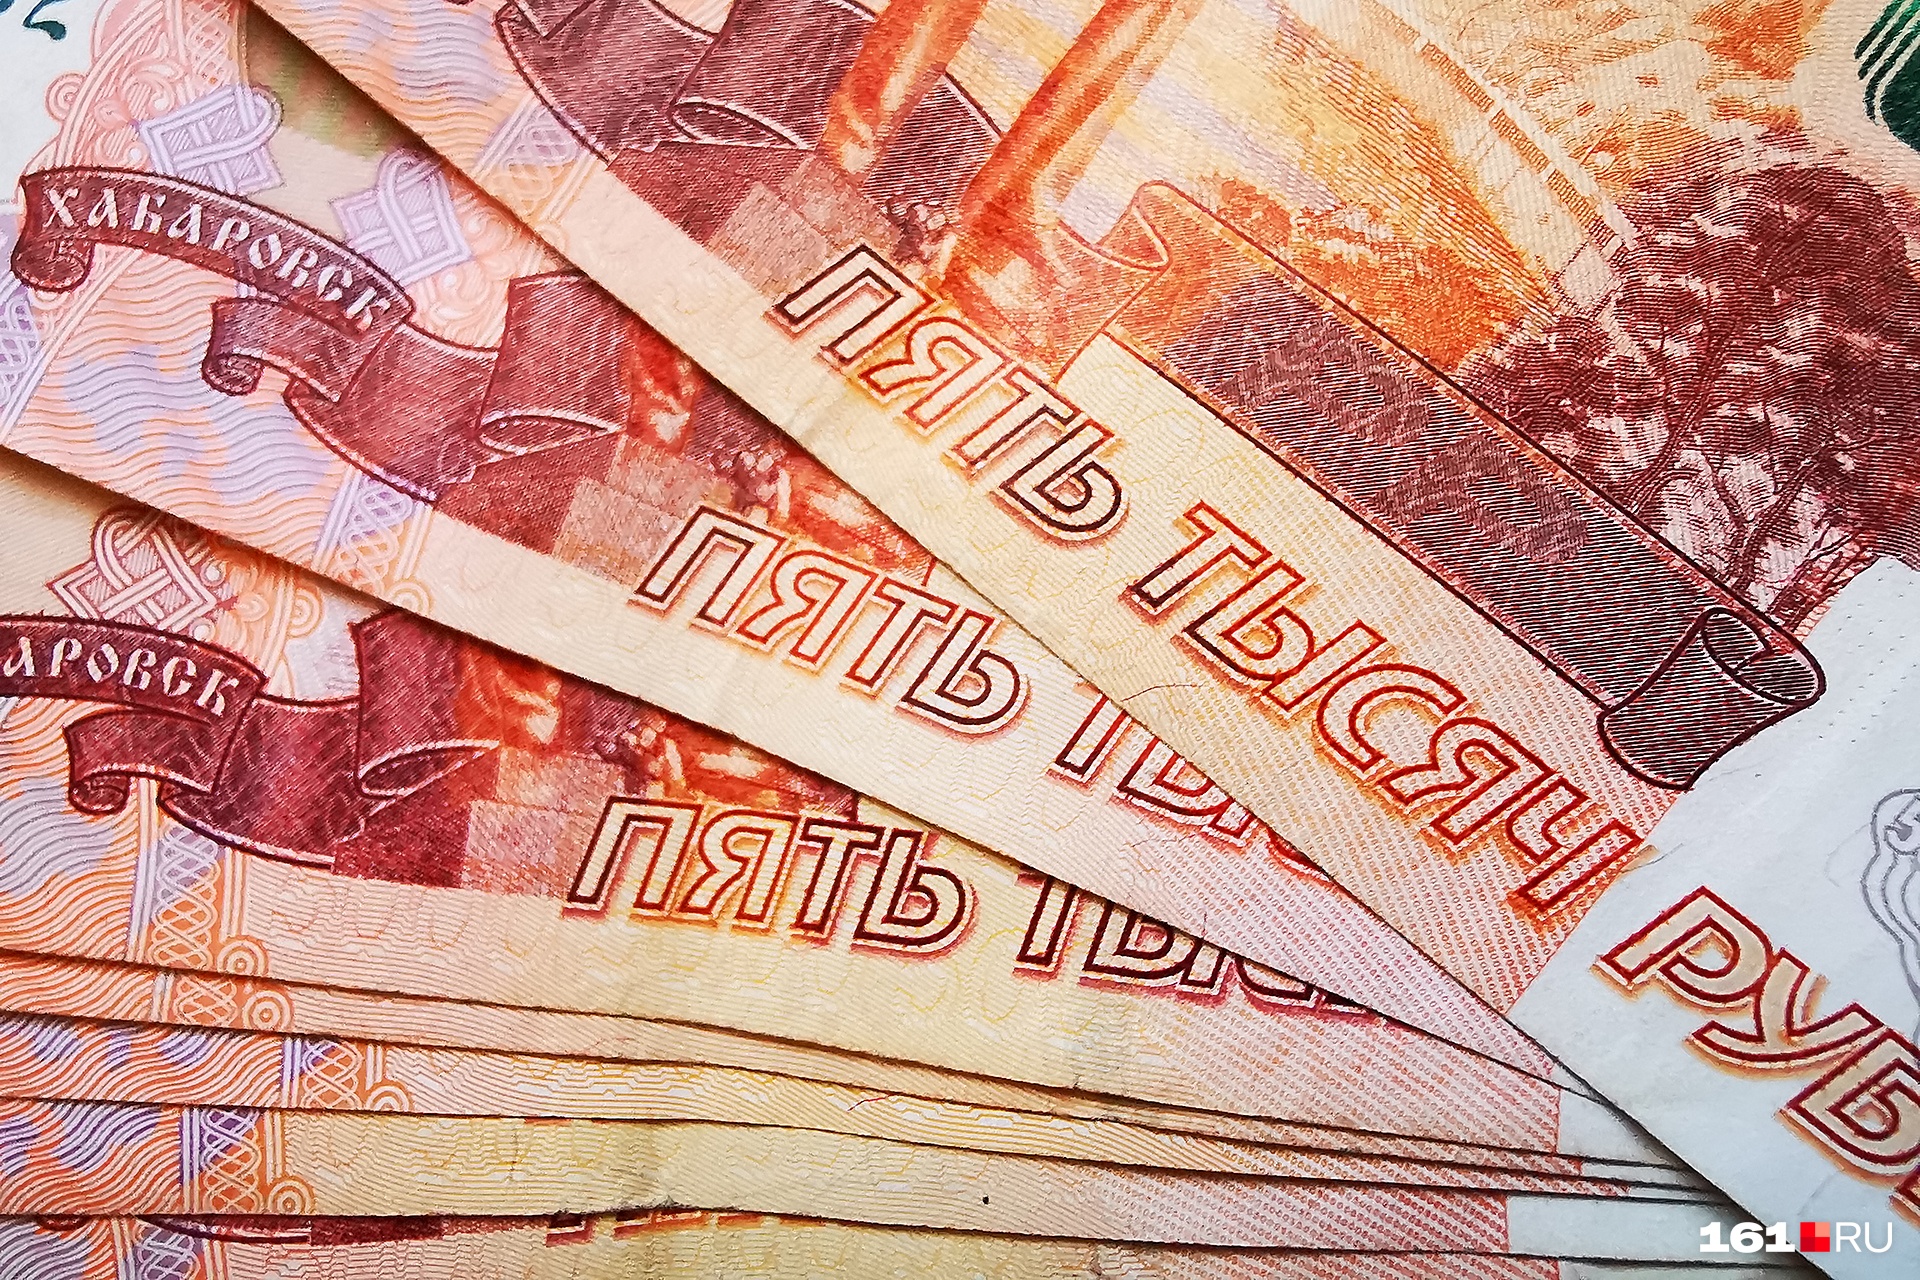 Две ангарчанки отдали телефонным мошенникам более 1,5 млн рублей